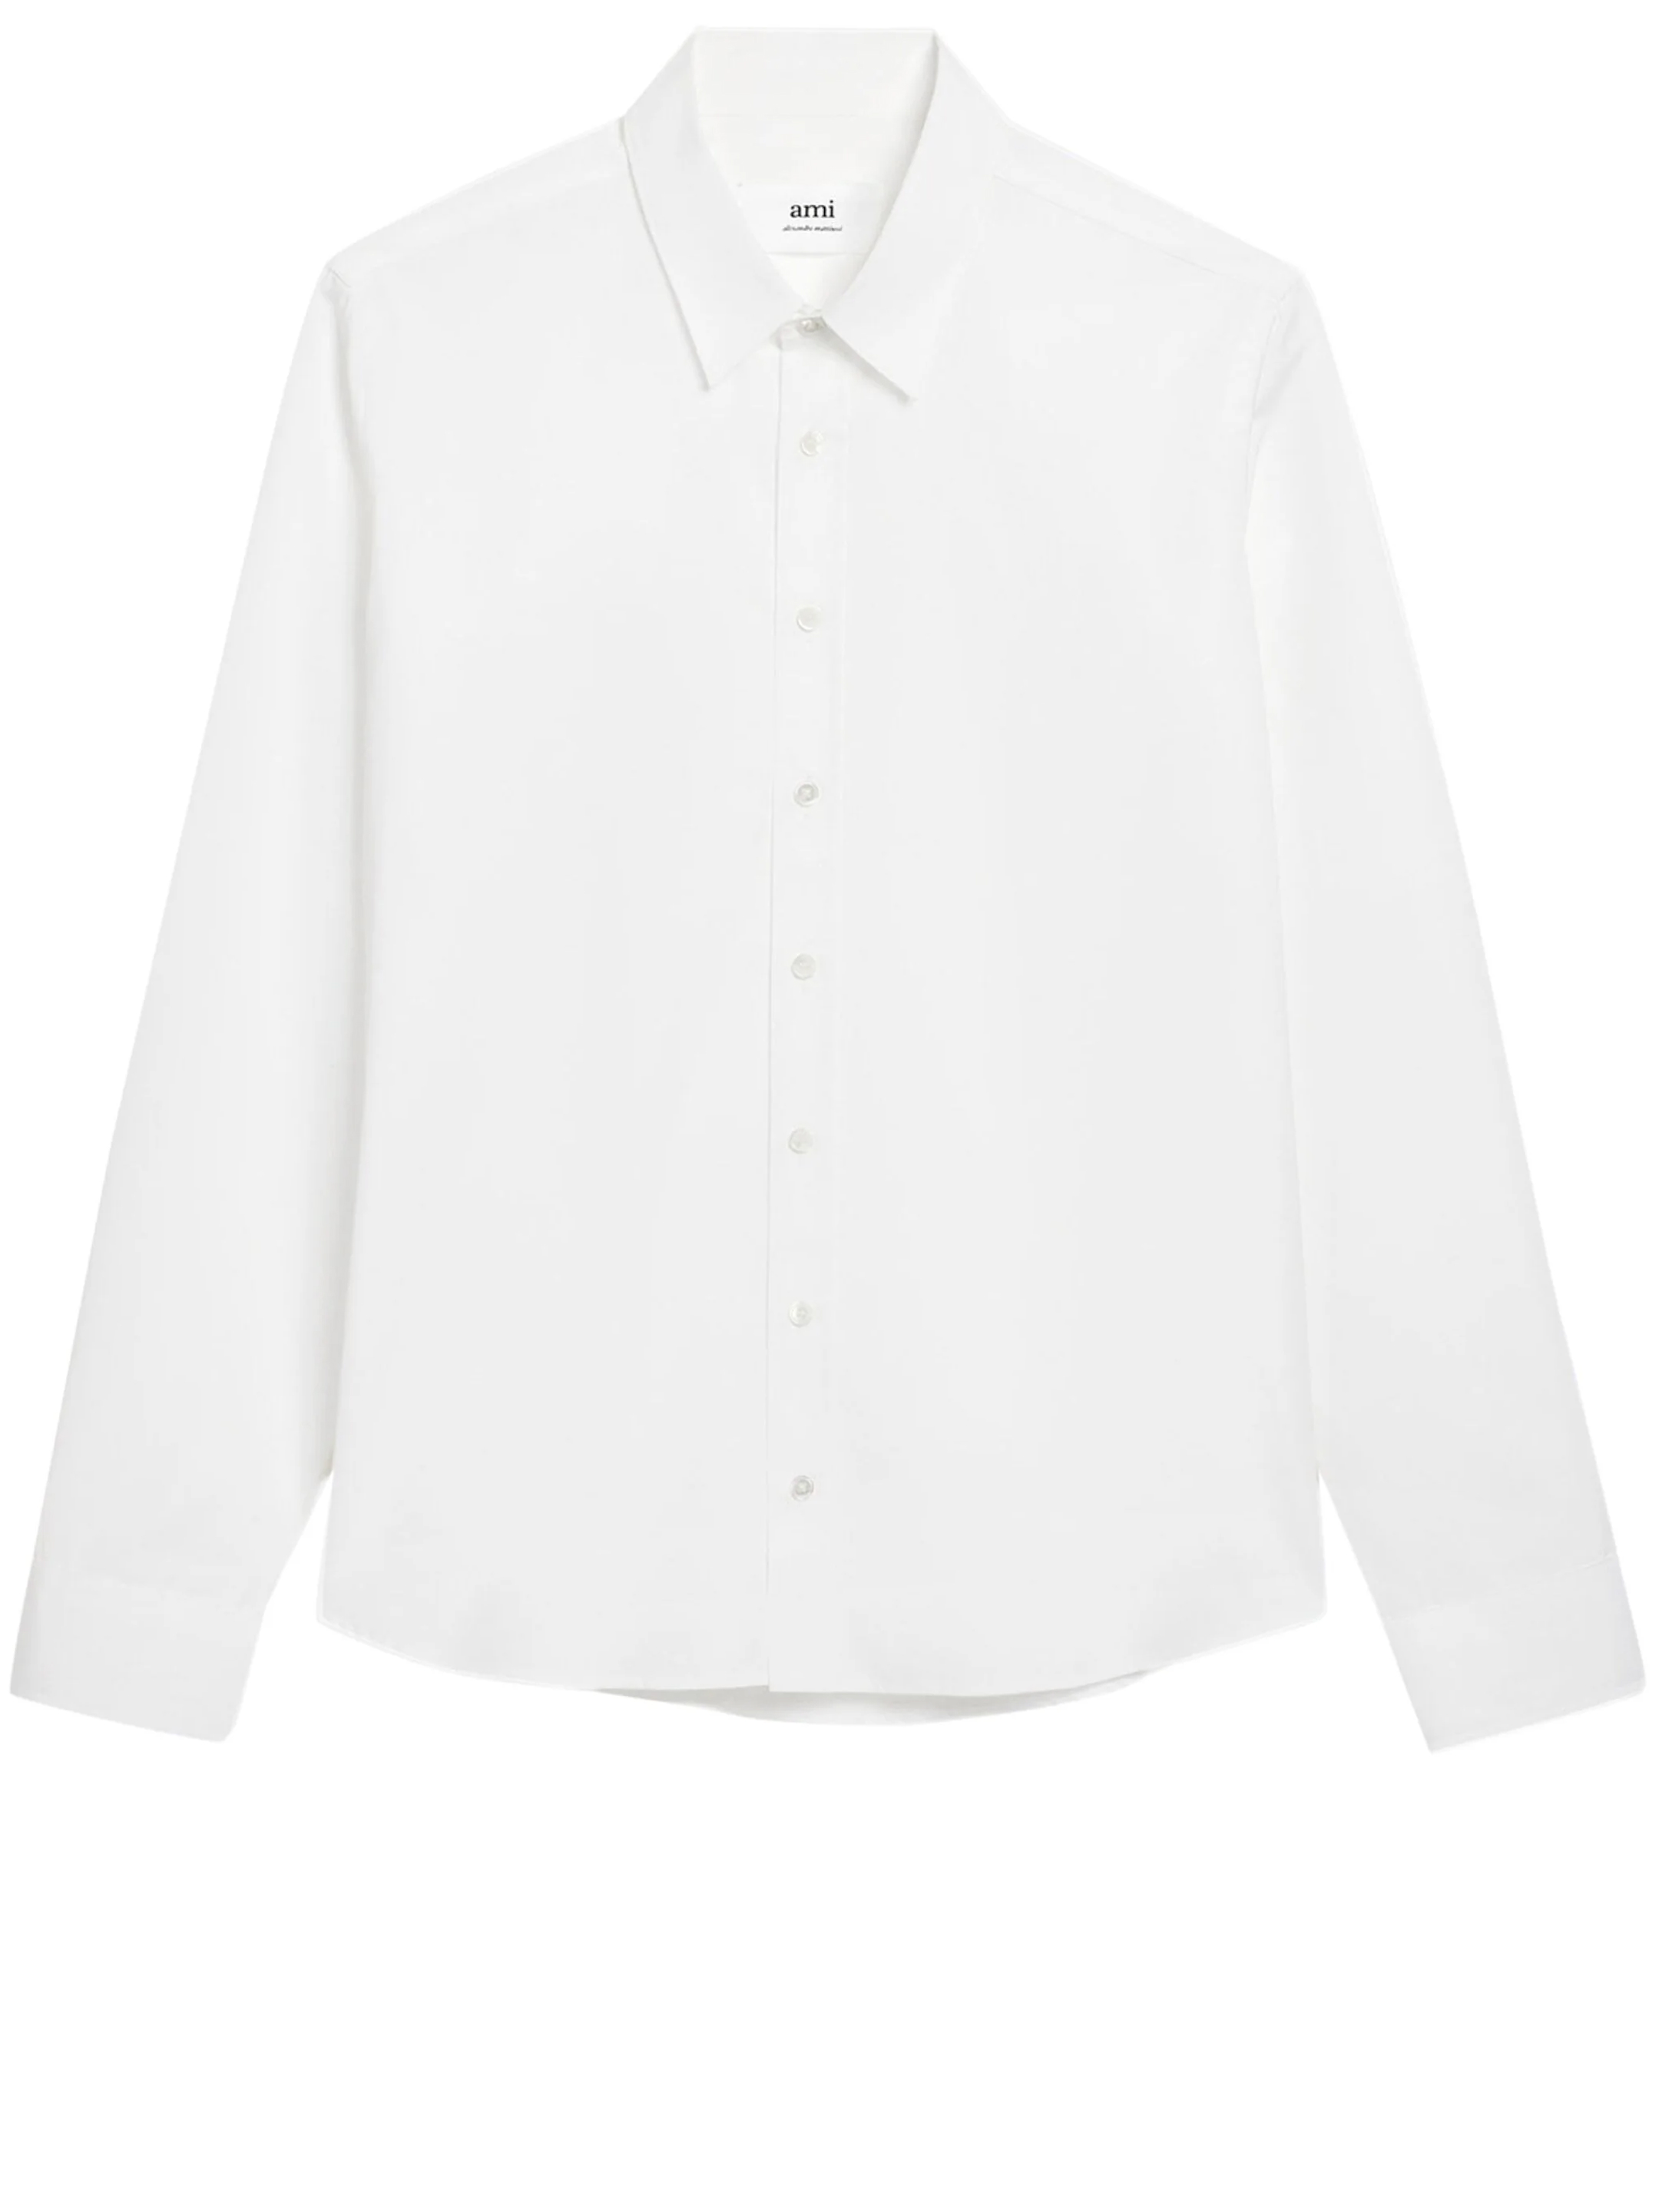 Рубашка Ami Paris Cotton, белый футболка cotton shirt ami paris белый